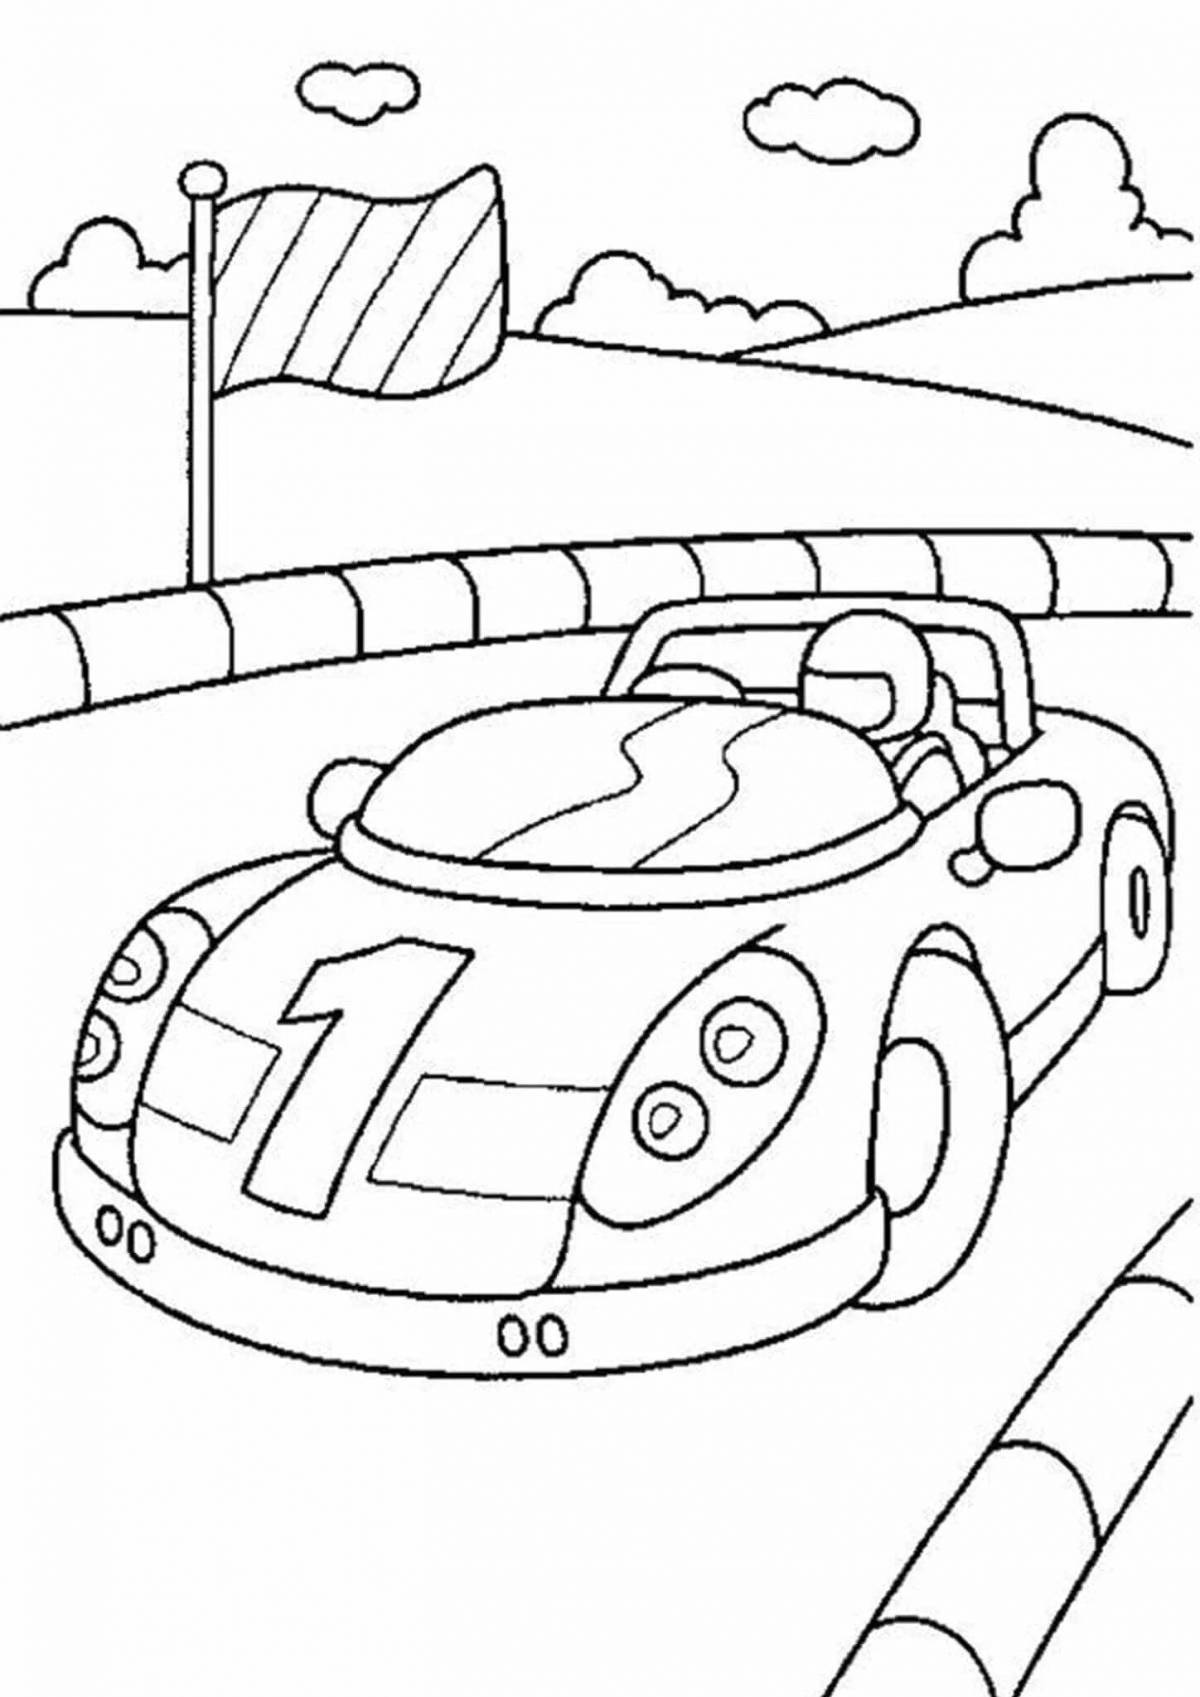 Trendy racing car coloring book for kids